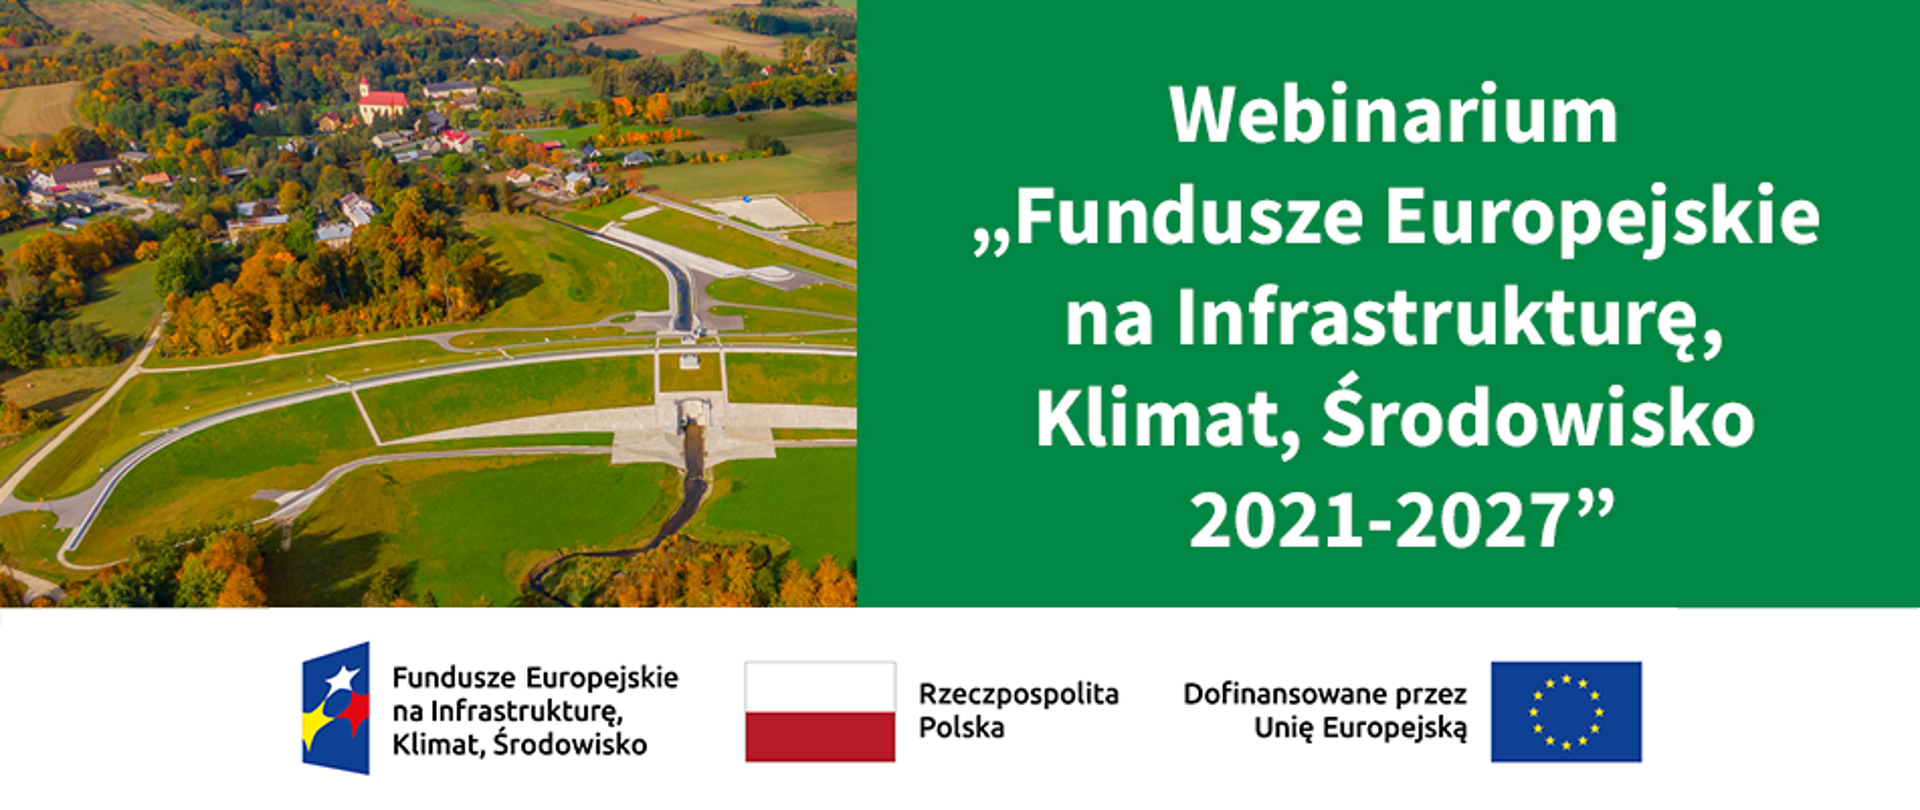 Plansza z napisem: "Webinarium „Fundusze Europejskie na Infrastrukturę, Klimat, Środowisko 2021-2027”. Na dole ciąg znaków dofinansowania Unijnego. 